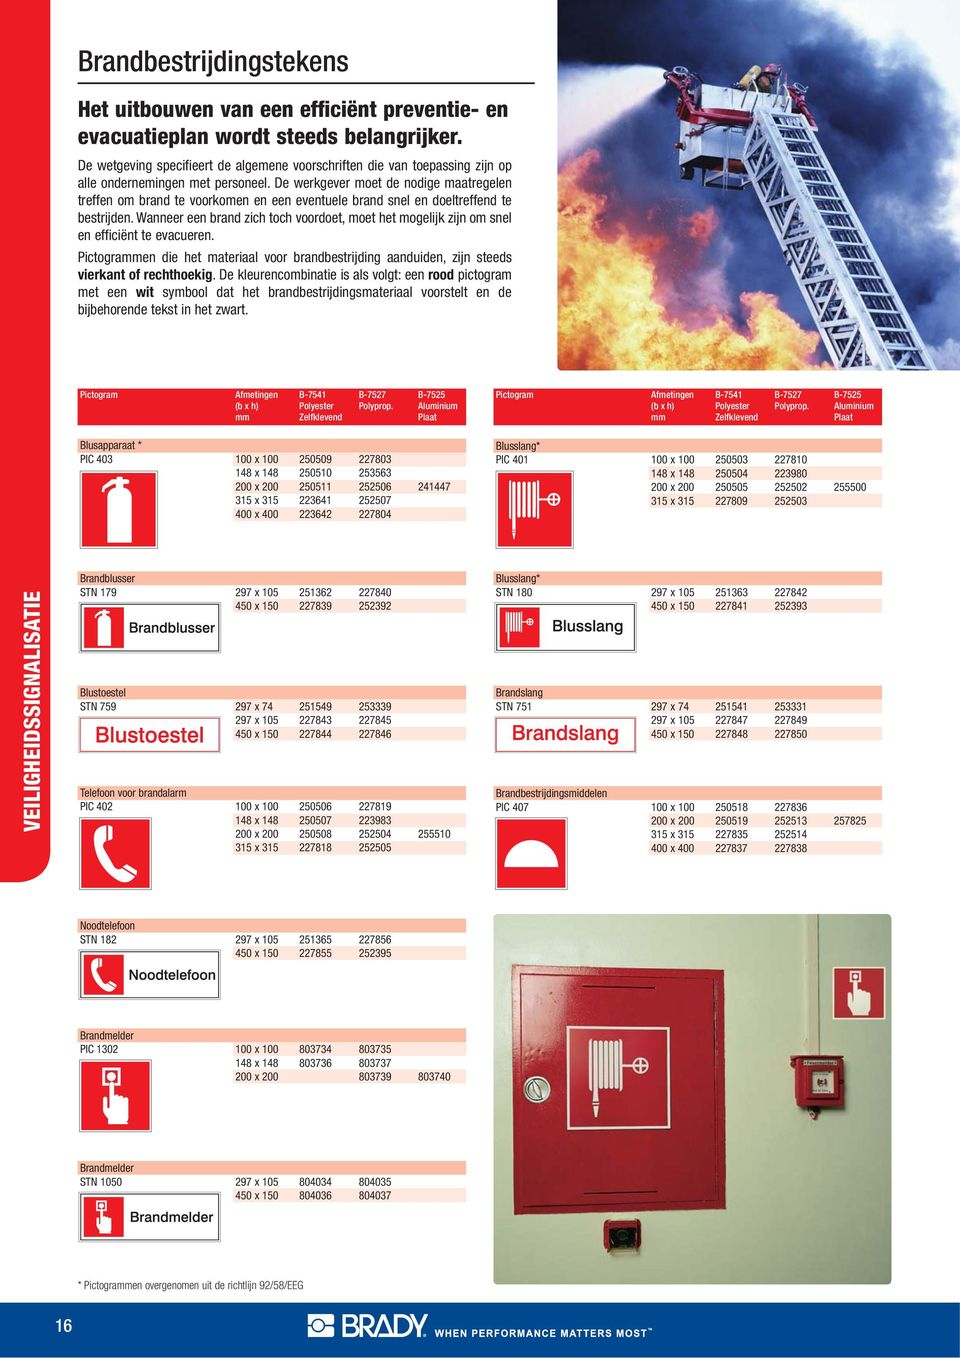 De werkgever moet de nodige maatregelen treffen om brand te voorkomen en een eventuele brand snel en doeltreffend te bestrijden.